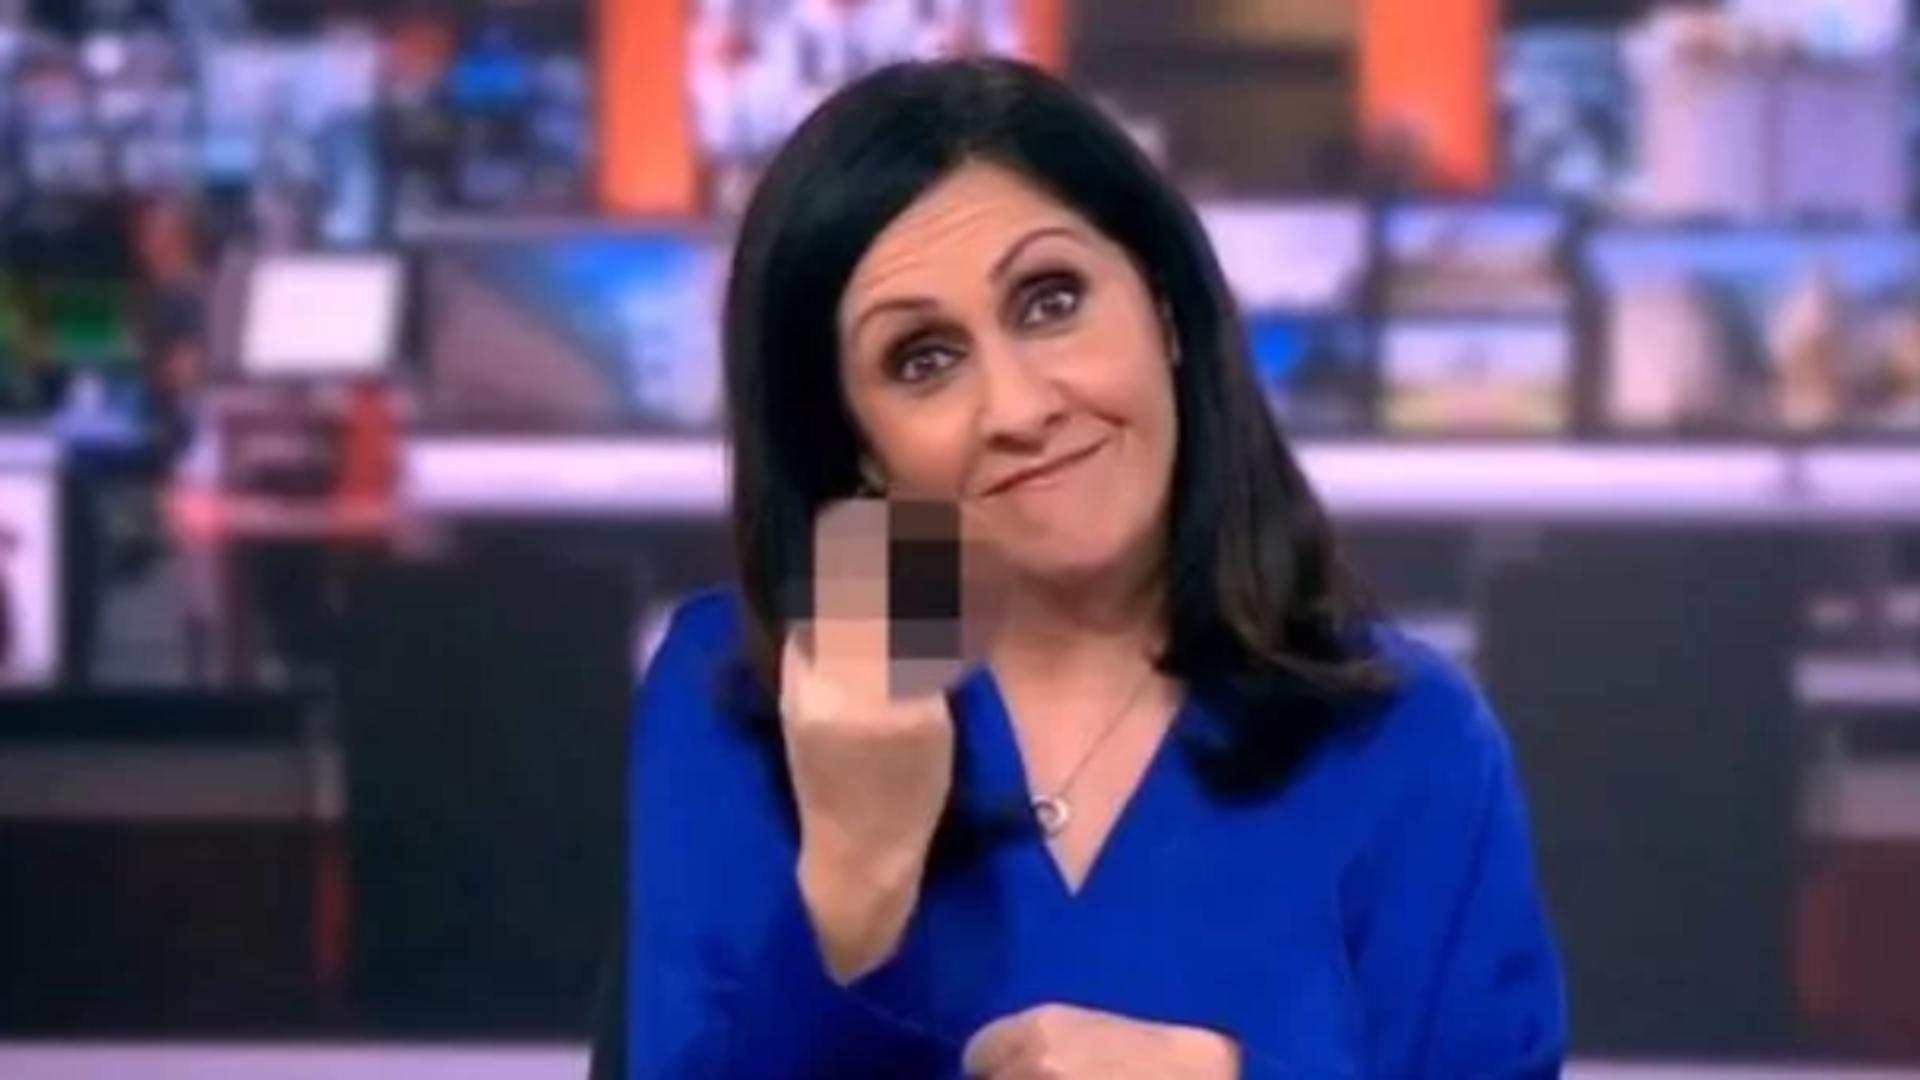 Gest obscen al unei prezentatoare BBC, transmis în direct. A arătat degetul mijlociu înaintea unei știri despre Boris Johnson